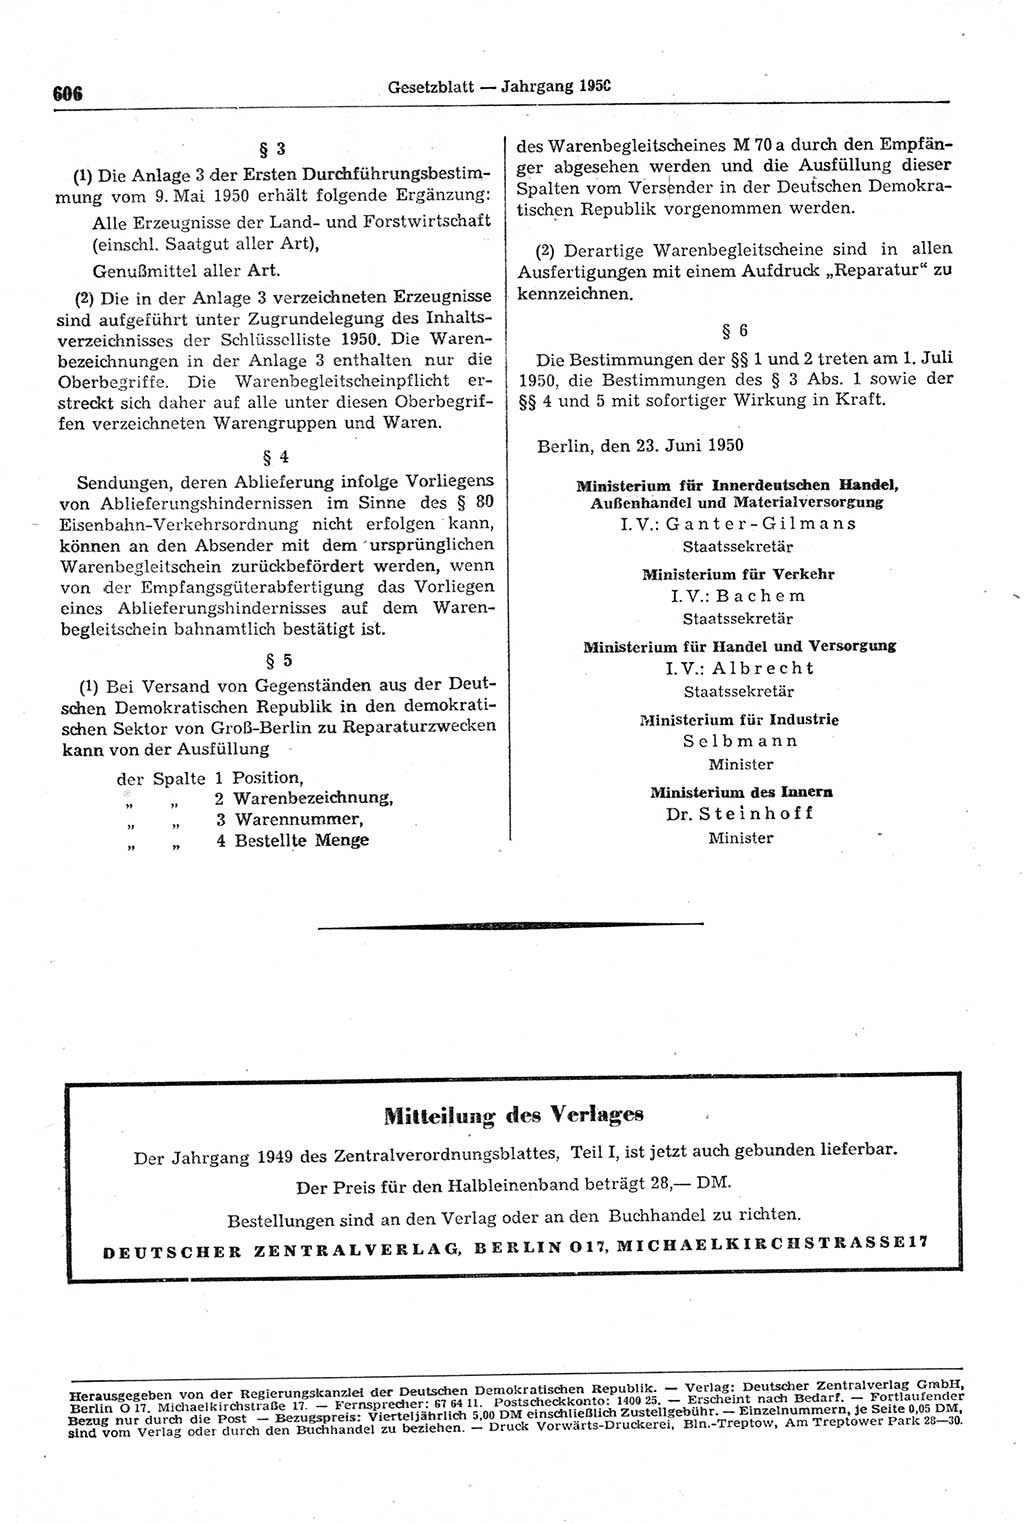 Gesetzblatt (GBl.) der Deutschen Demokratischen Republik (DDR) 1950, Seite 606 (GBl. DDR 1950, S. 606)